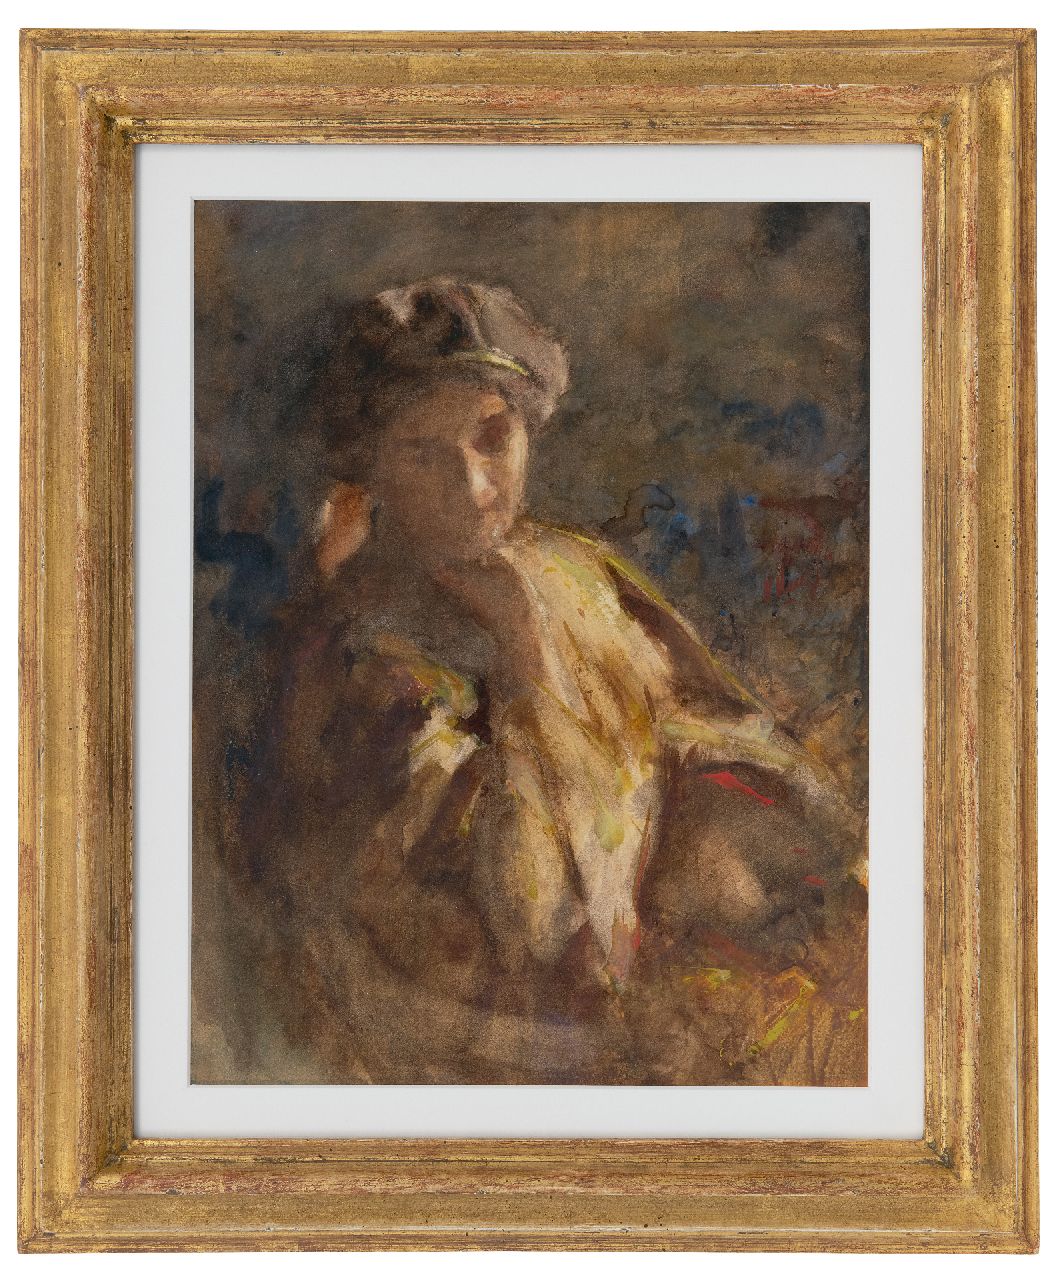 Maris W.M.  | 'Willem' Matthijs Maris | Aquarellen en tekeningen te koop aangeboden | Dagdromende vrouw, aquarel op papier 34,3 x 26,7 cm, gesigneerd rechts van het midden